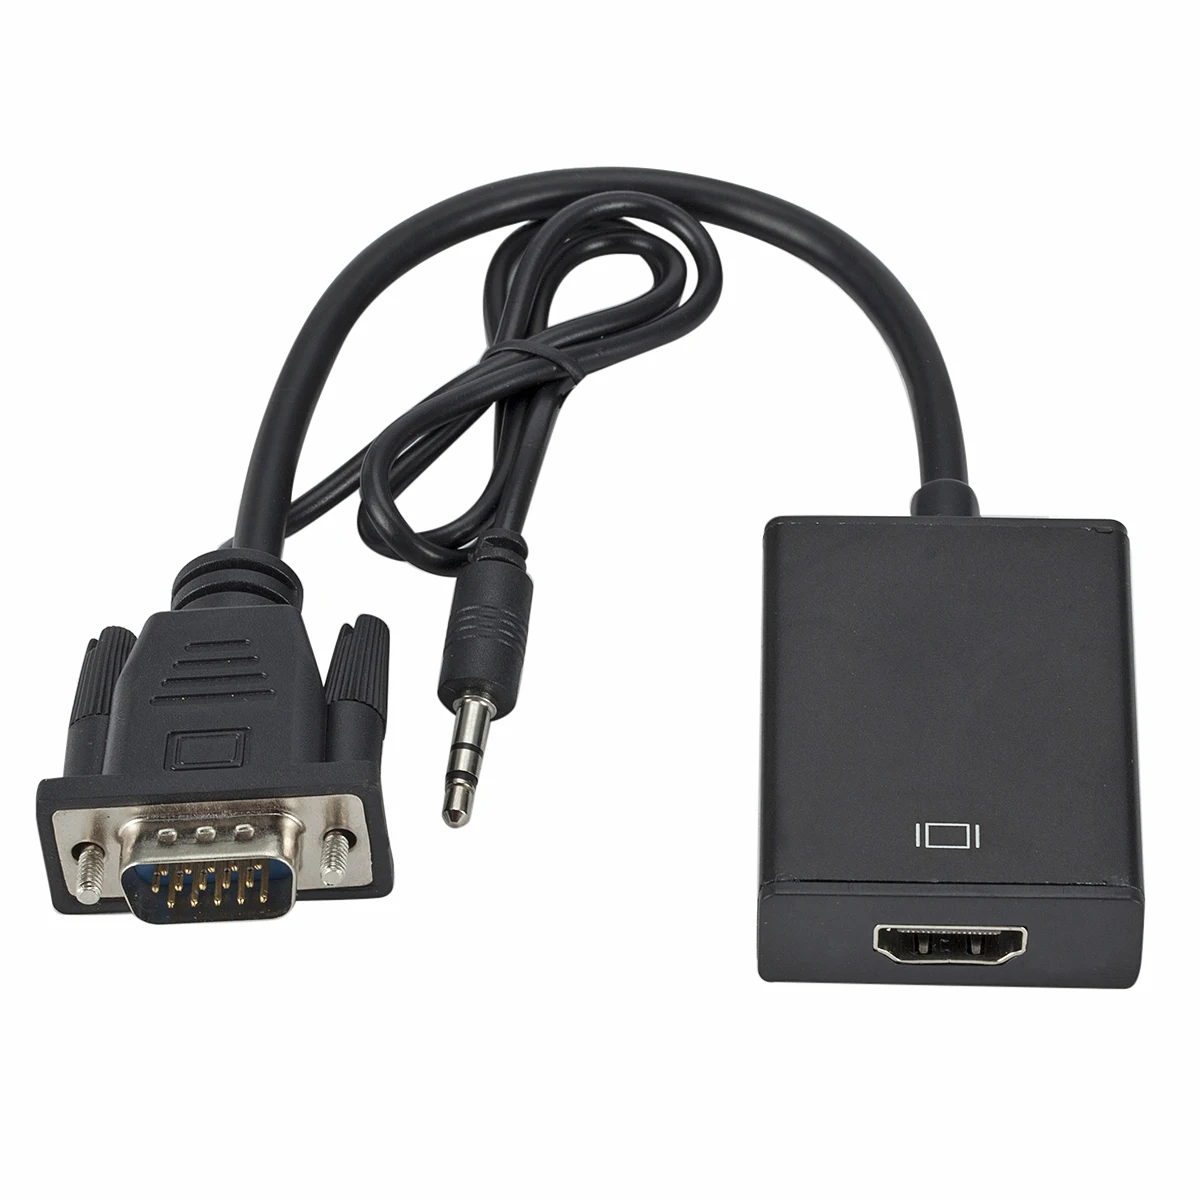 VGA Мужской к HDMI Женский конвертер Кабель-адаптер с аудио выходом 1080P VGA HDMI адаптер для ПК ноутбука к HDTV проектор r10 - Цвет: Черный